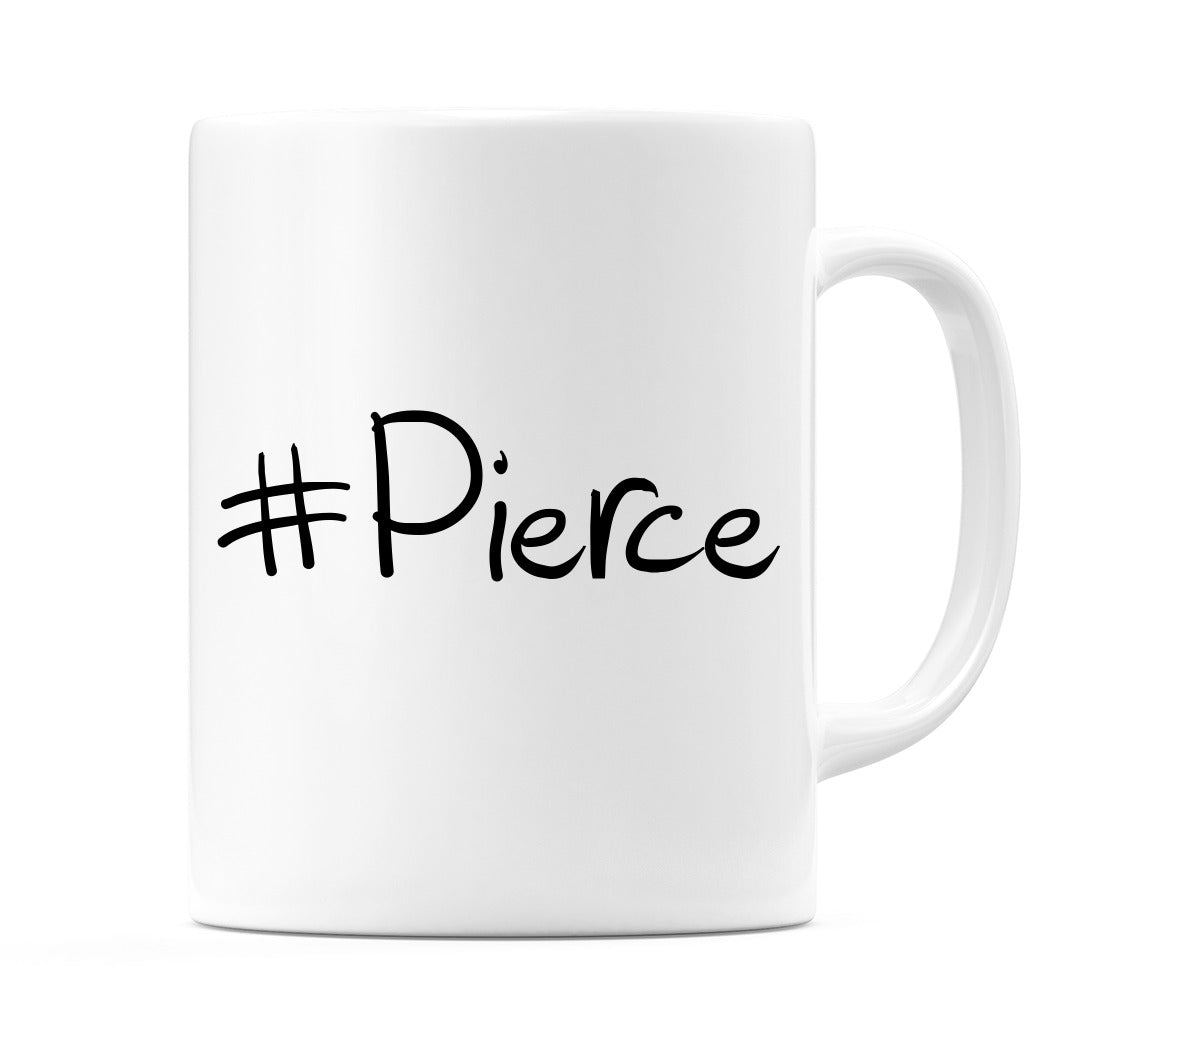 #Pierce Mug